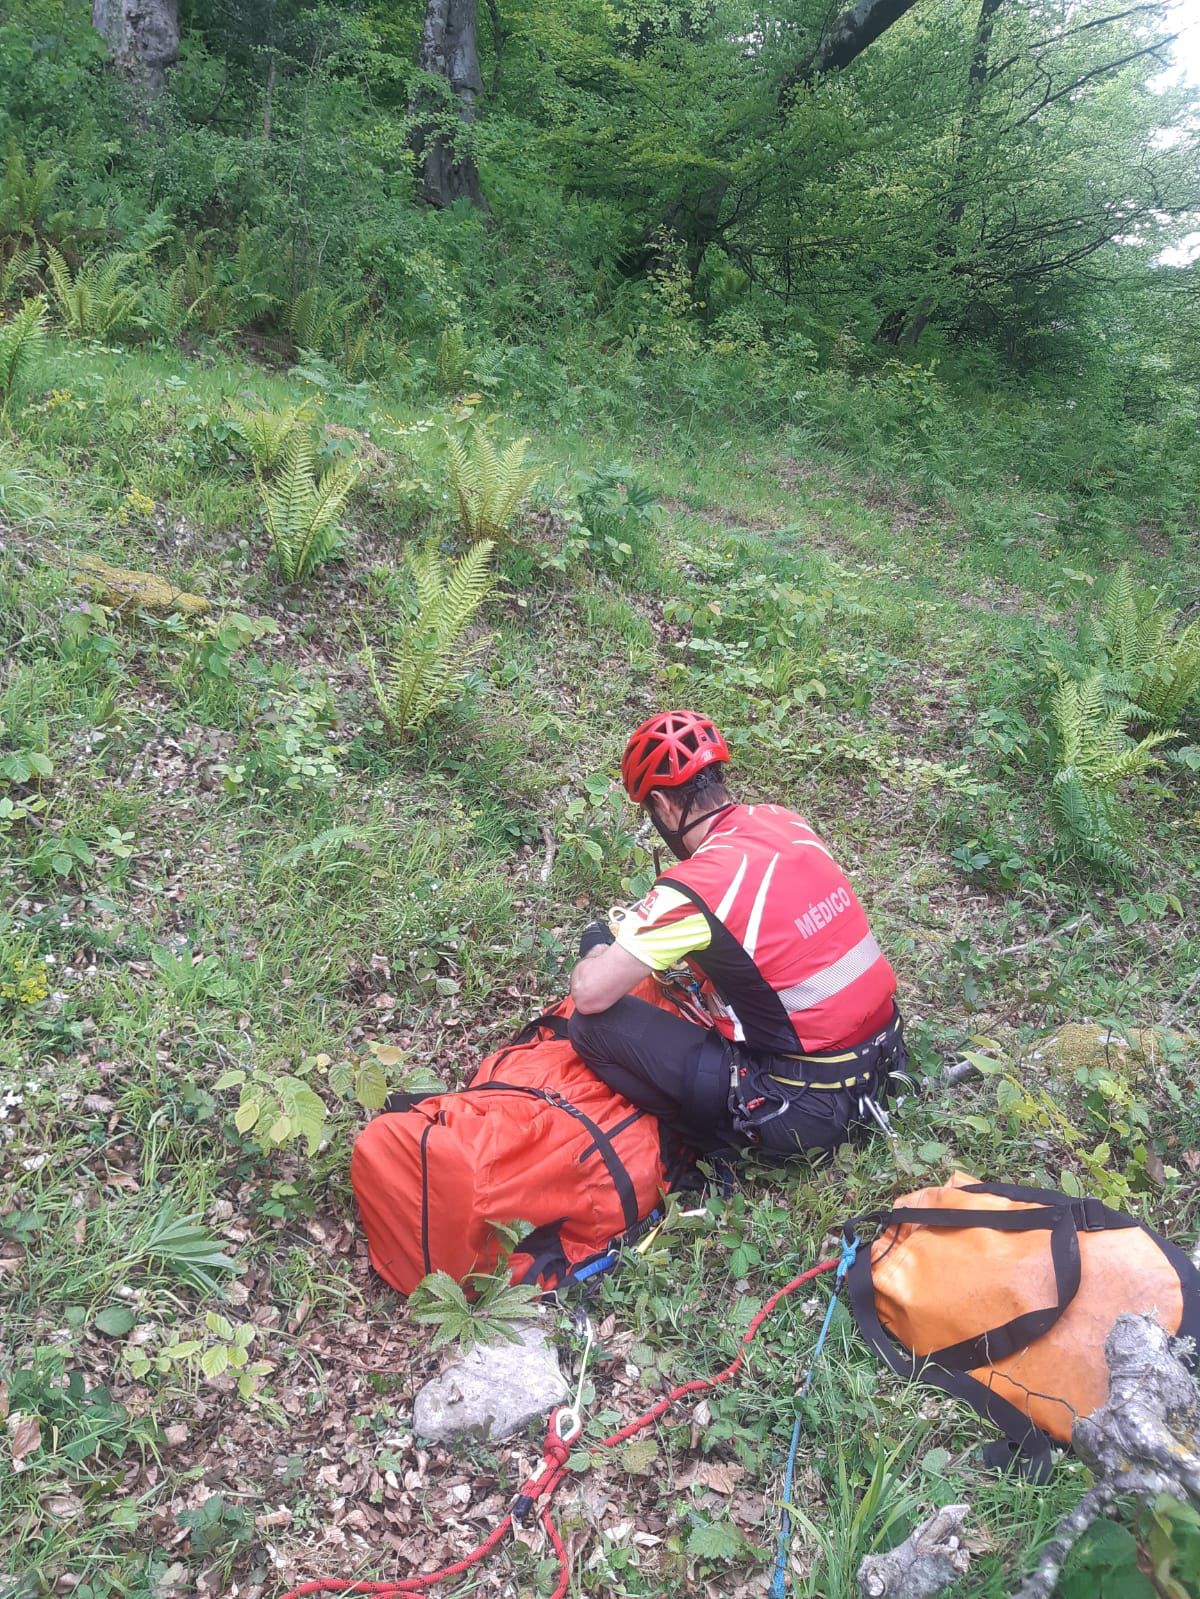  Rescatado un senderista que se desmayó mientras realizaba el Camino Lebaniego